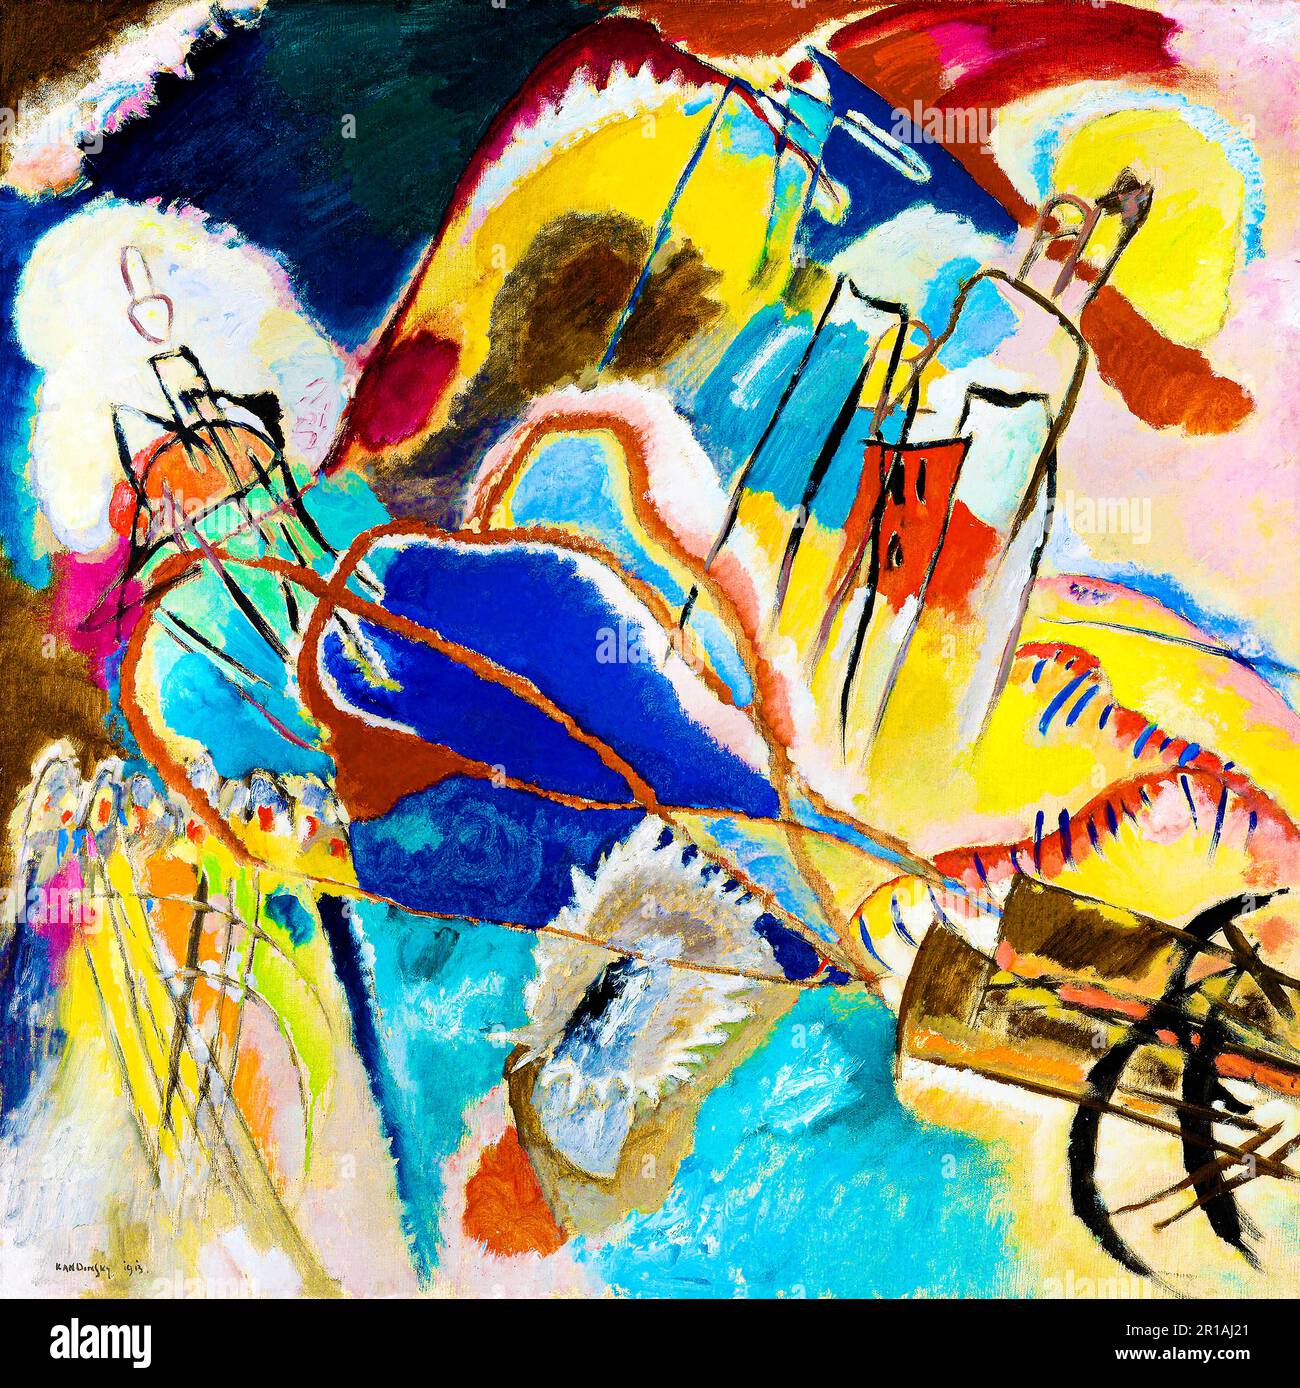 Improvisation Nr. 30 hochauflösendes Gemälde von Wassily Kandinsky. Original vom Art Institute of Chicago. Stockfoto